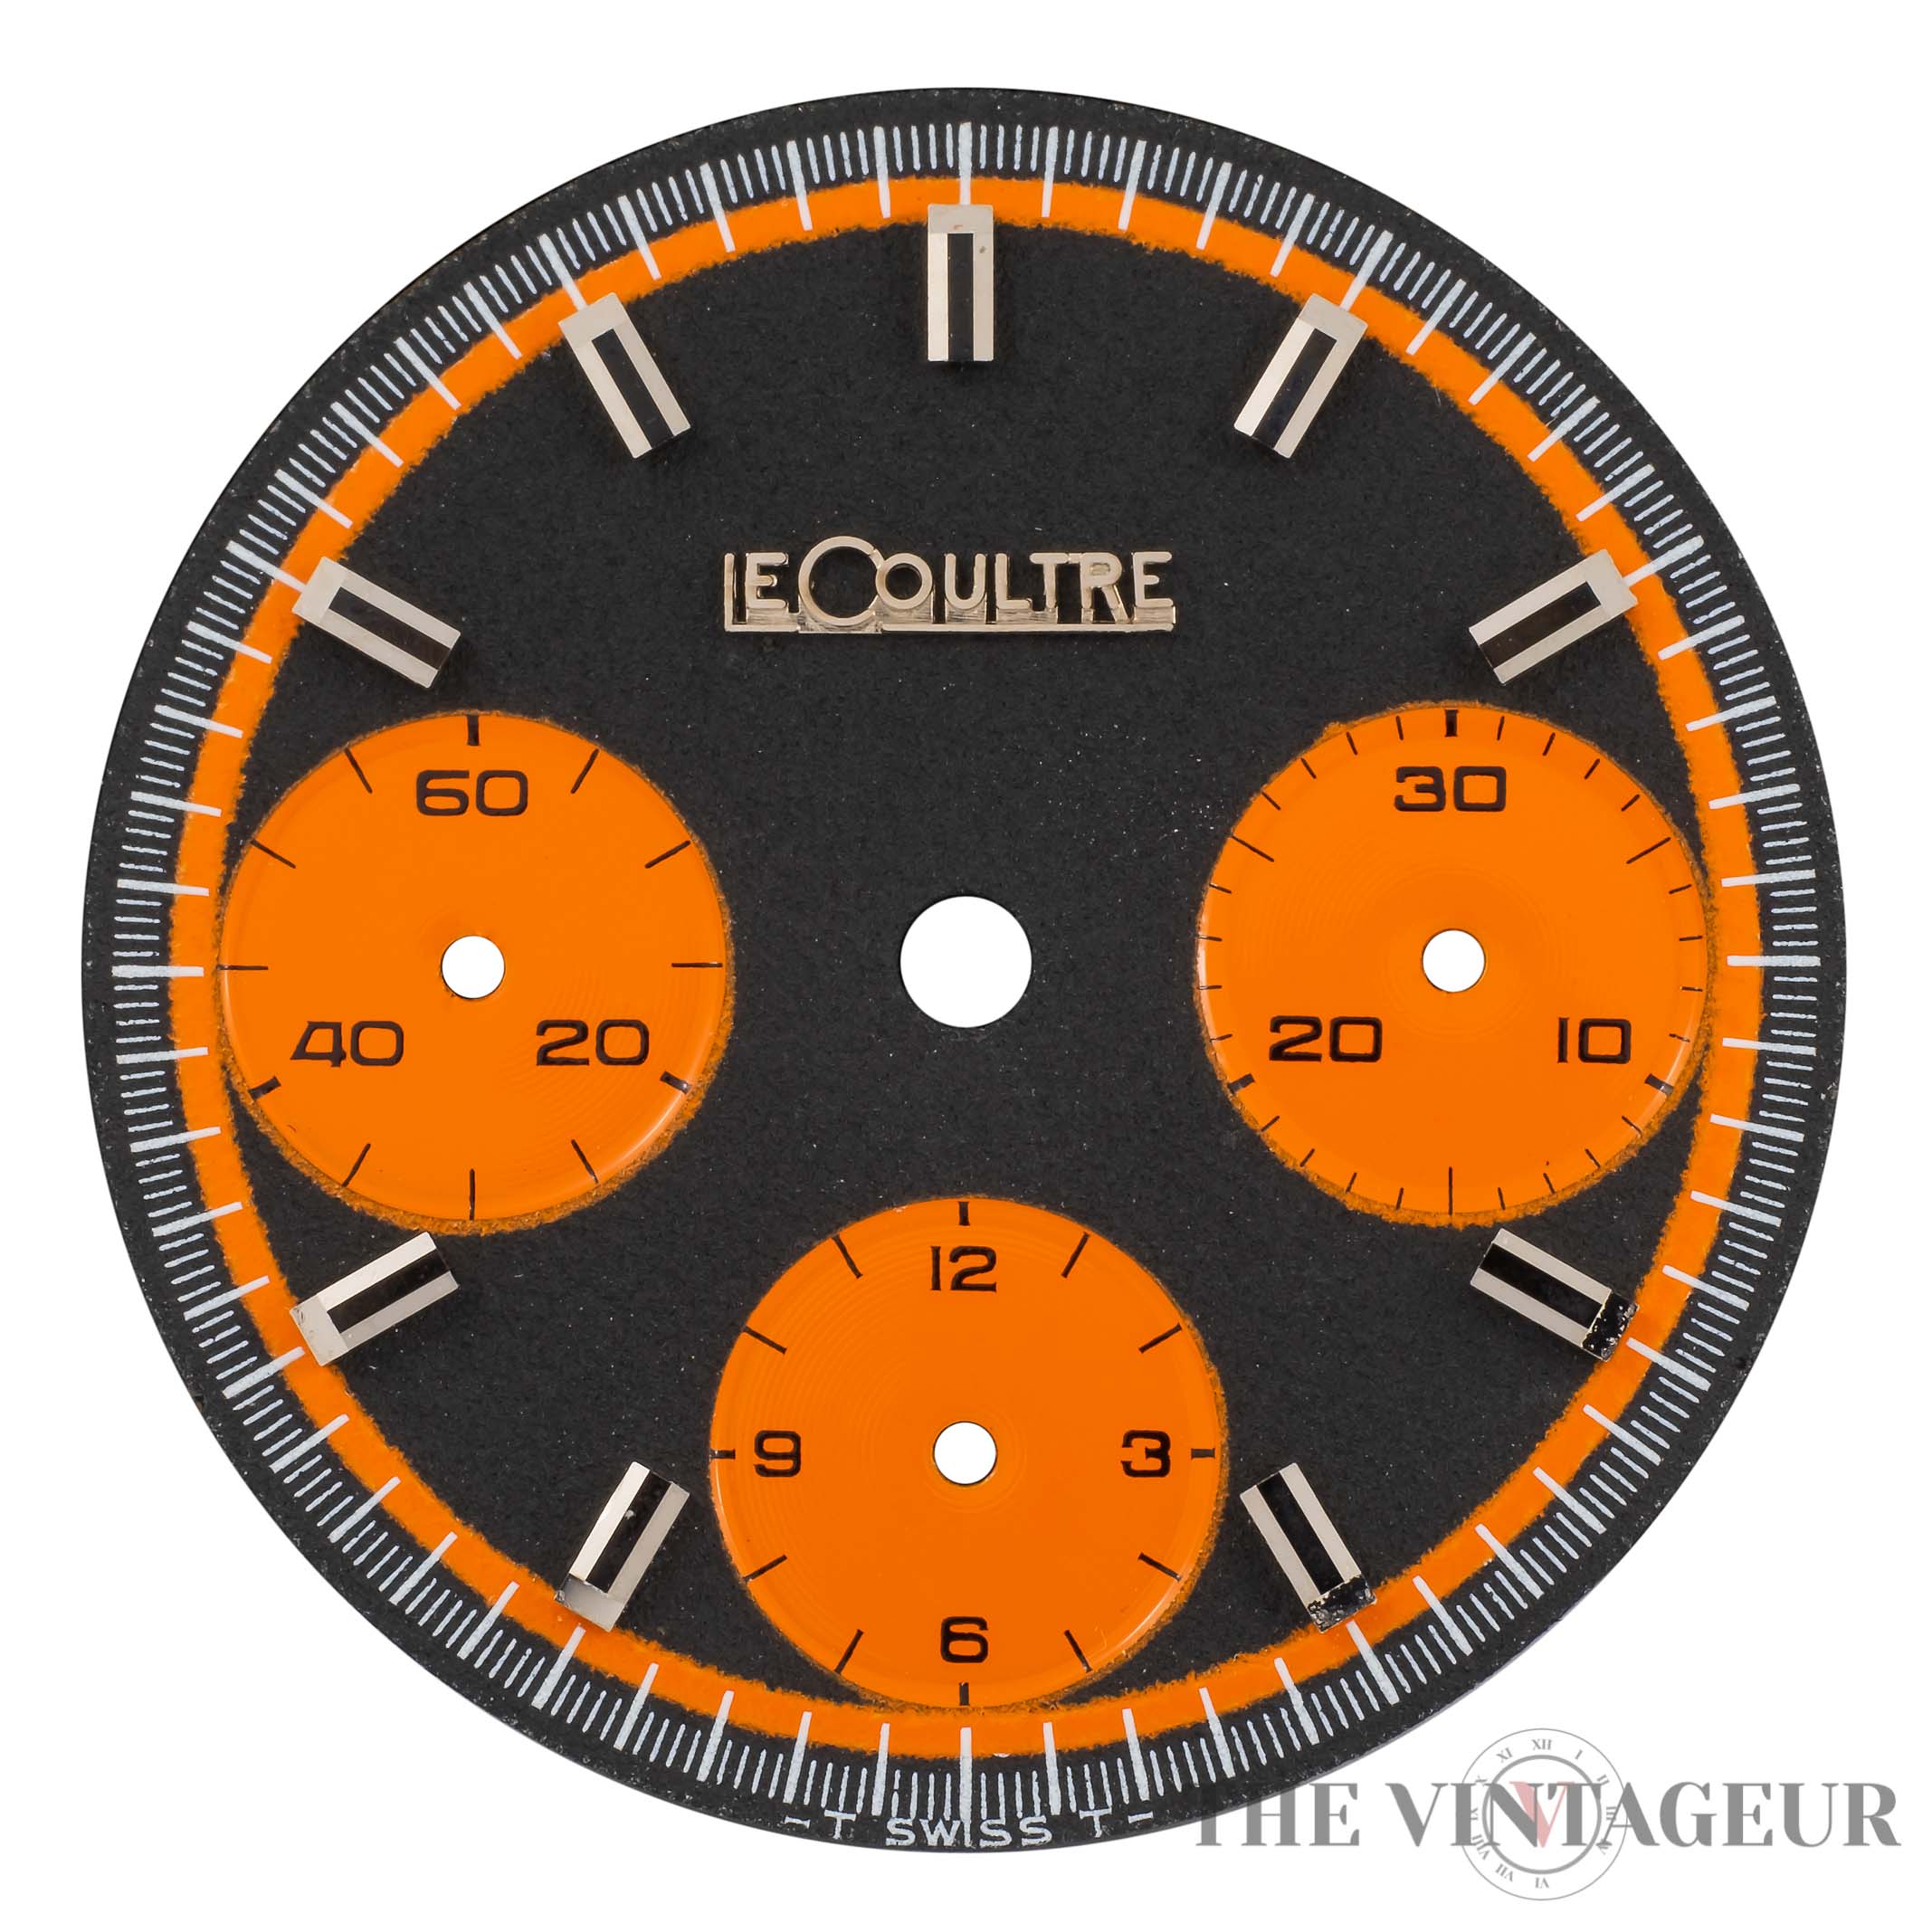 Lecoultre Chronometer - The Vintageur